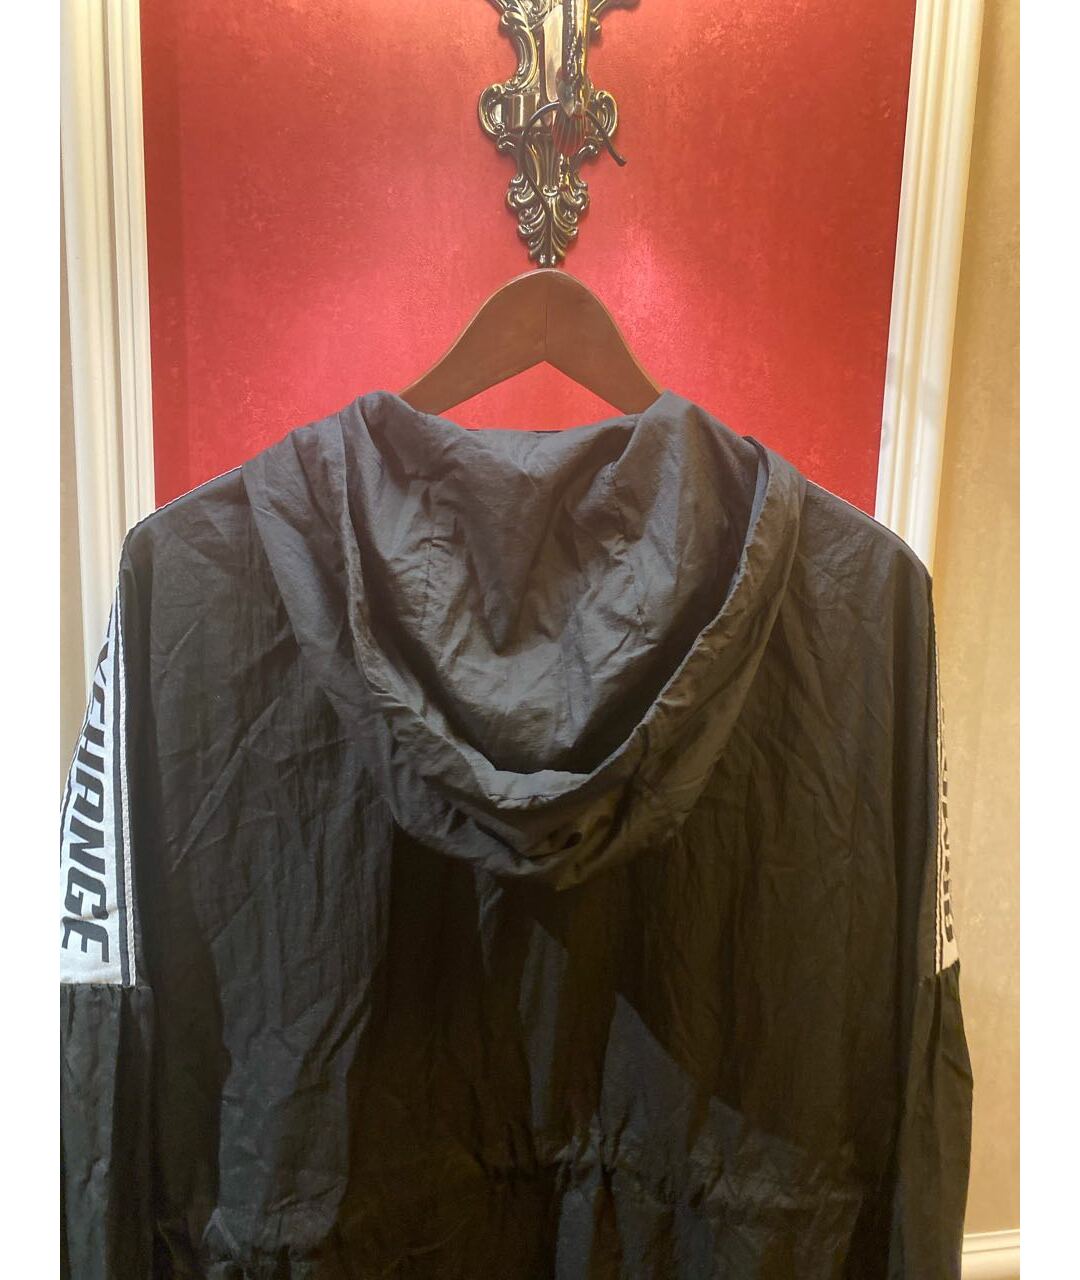 ARMANI EXCHANGE Черная полиамидовая куртка, фото 3